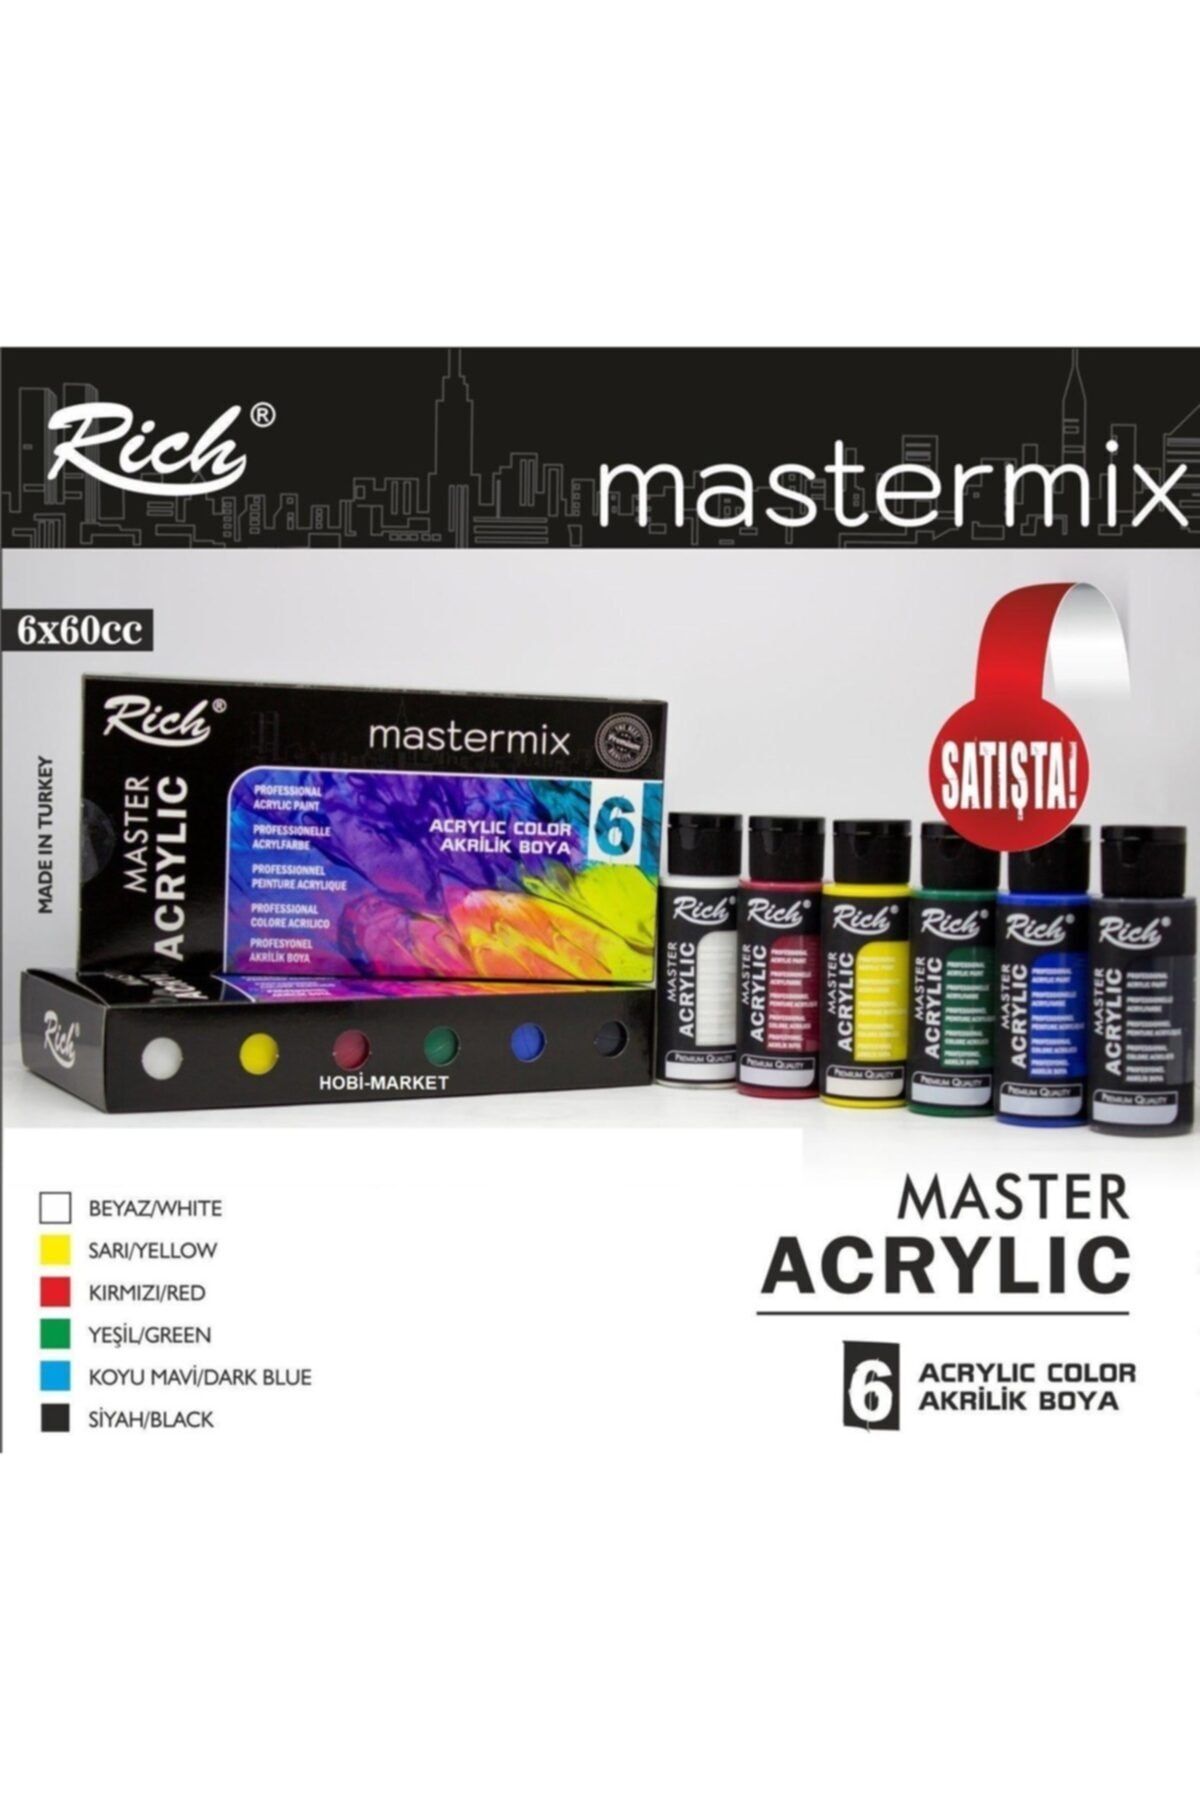 ADDA Rich Mastermix Özel Akrilik Boya Seti 6 Renk X 60cc. 6'lı Akrilik